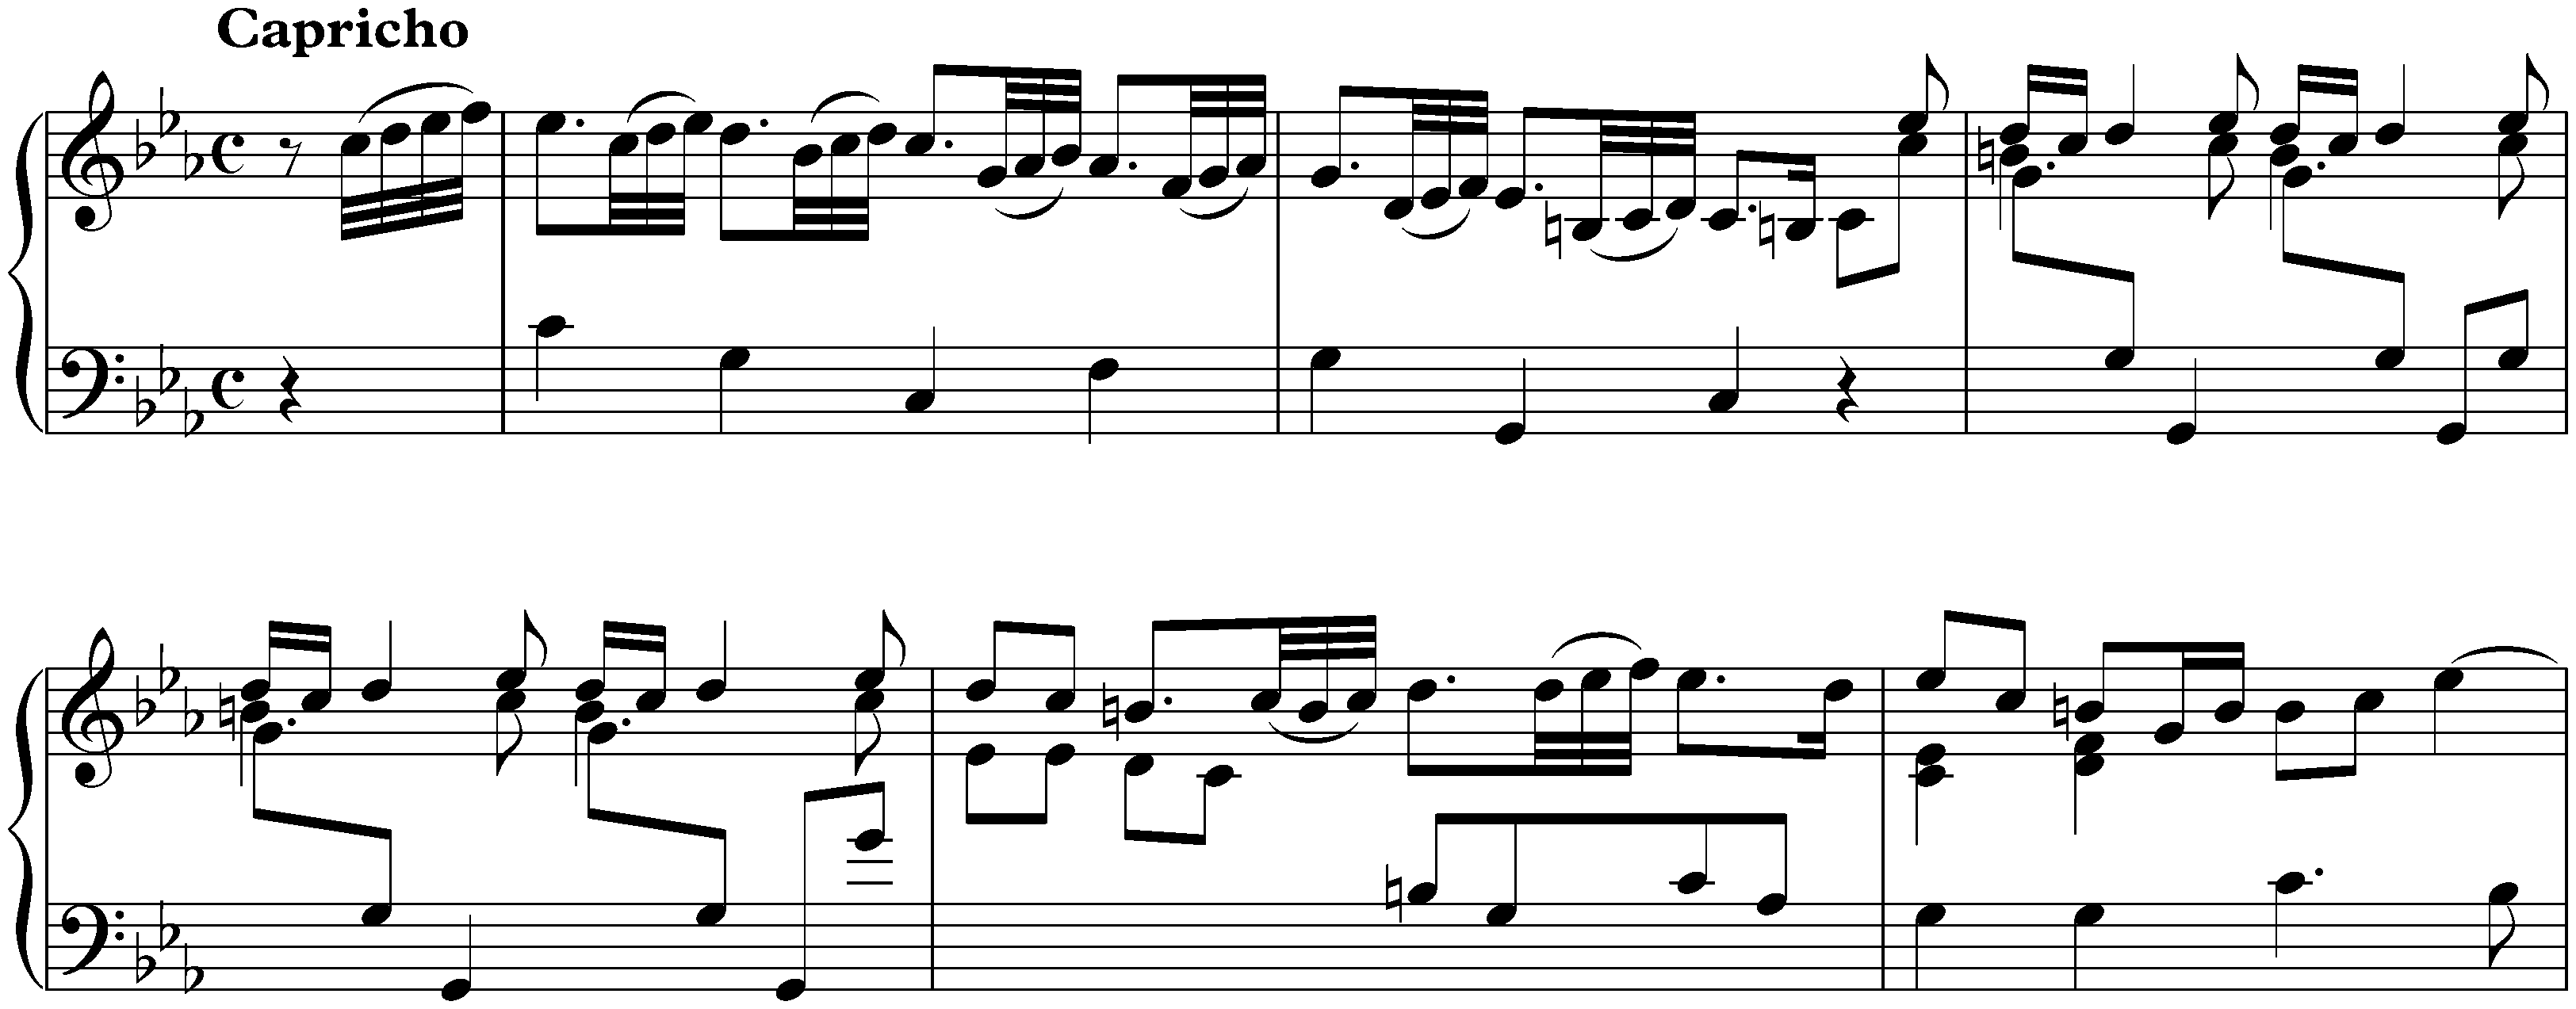 Sonatas found in Paris; 2. C minor, 1. Capricho